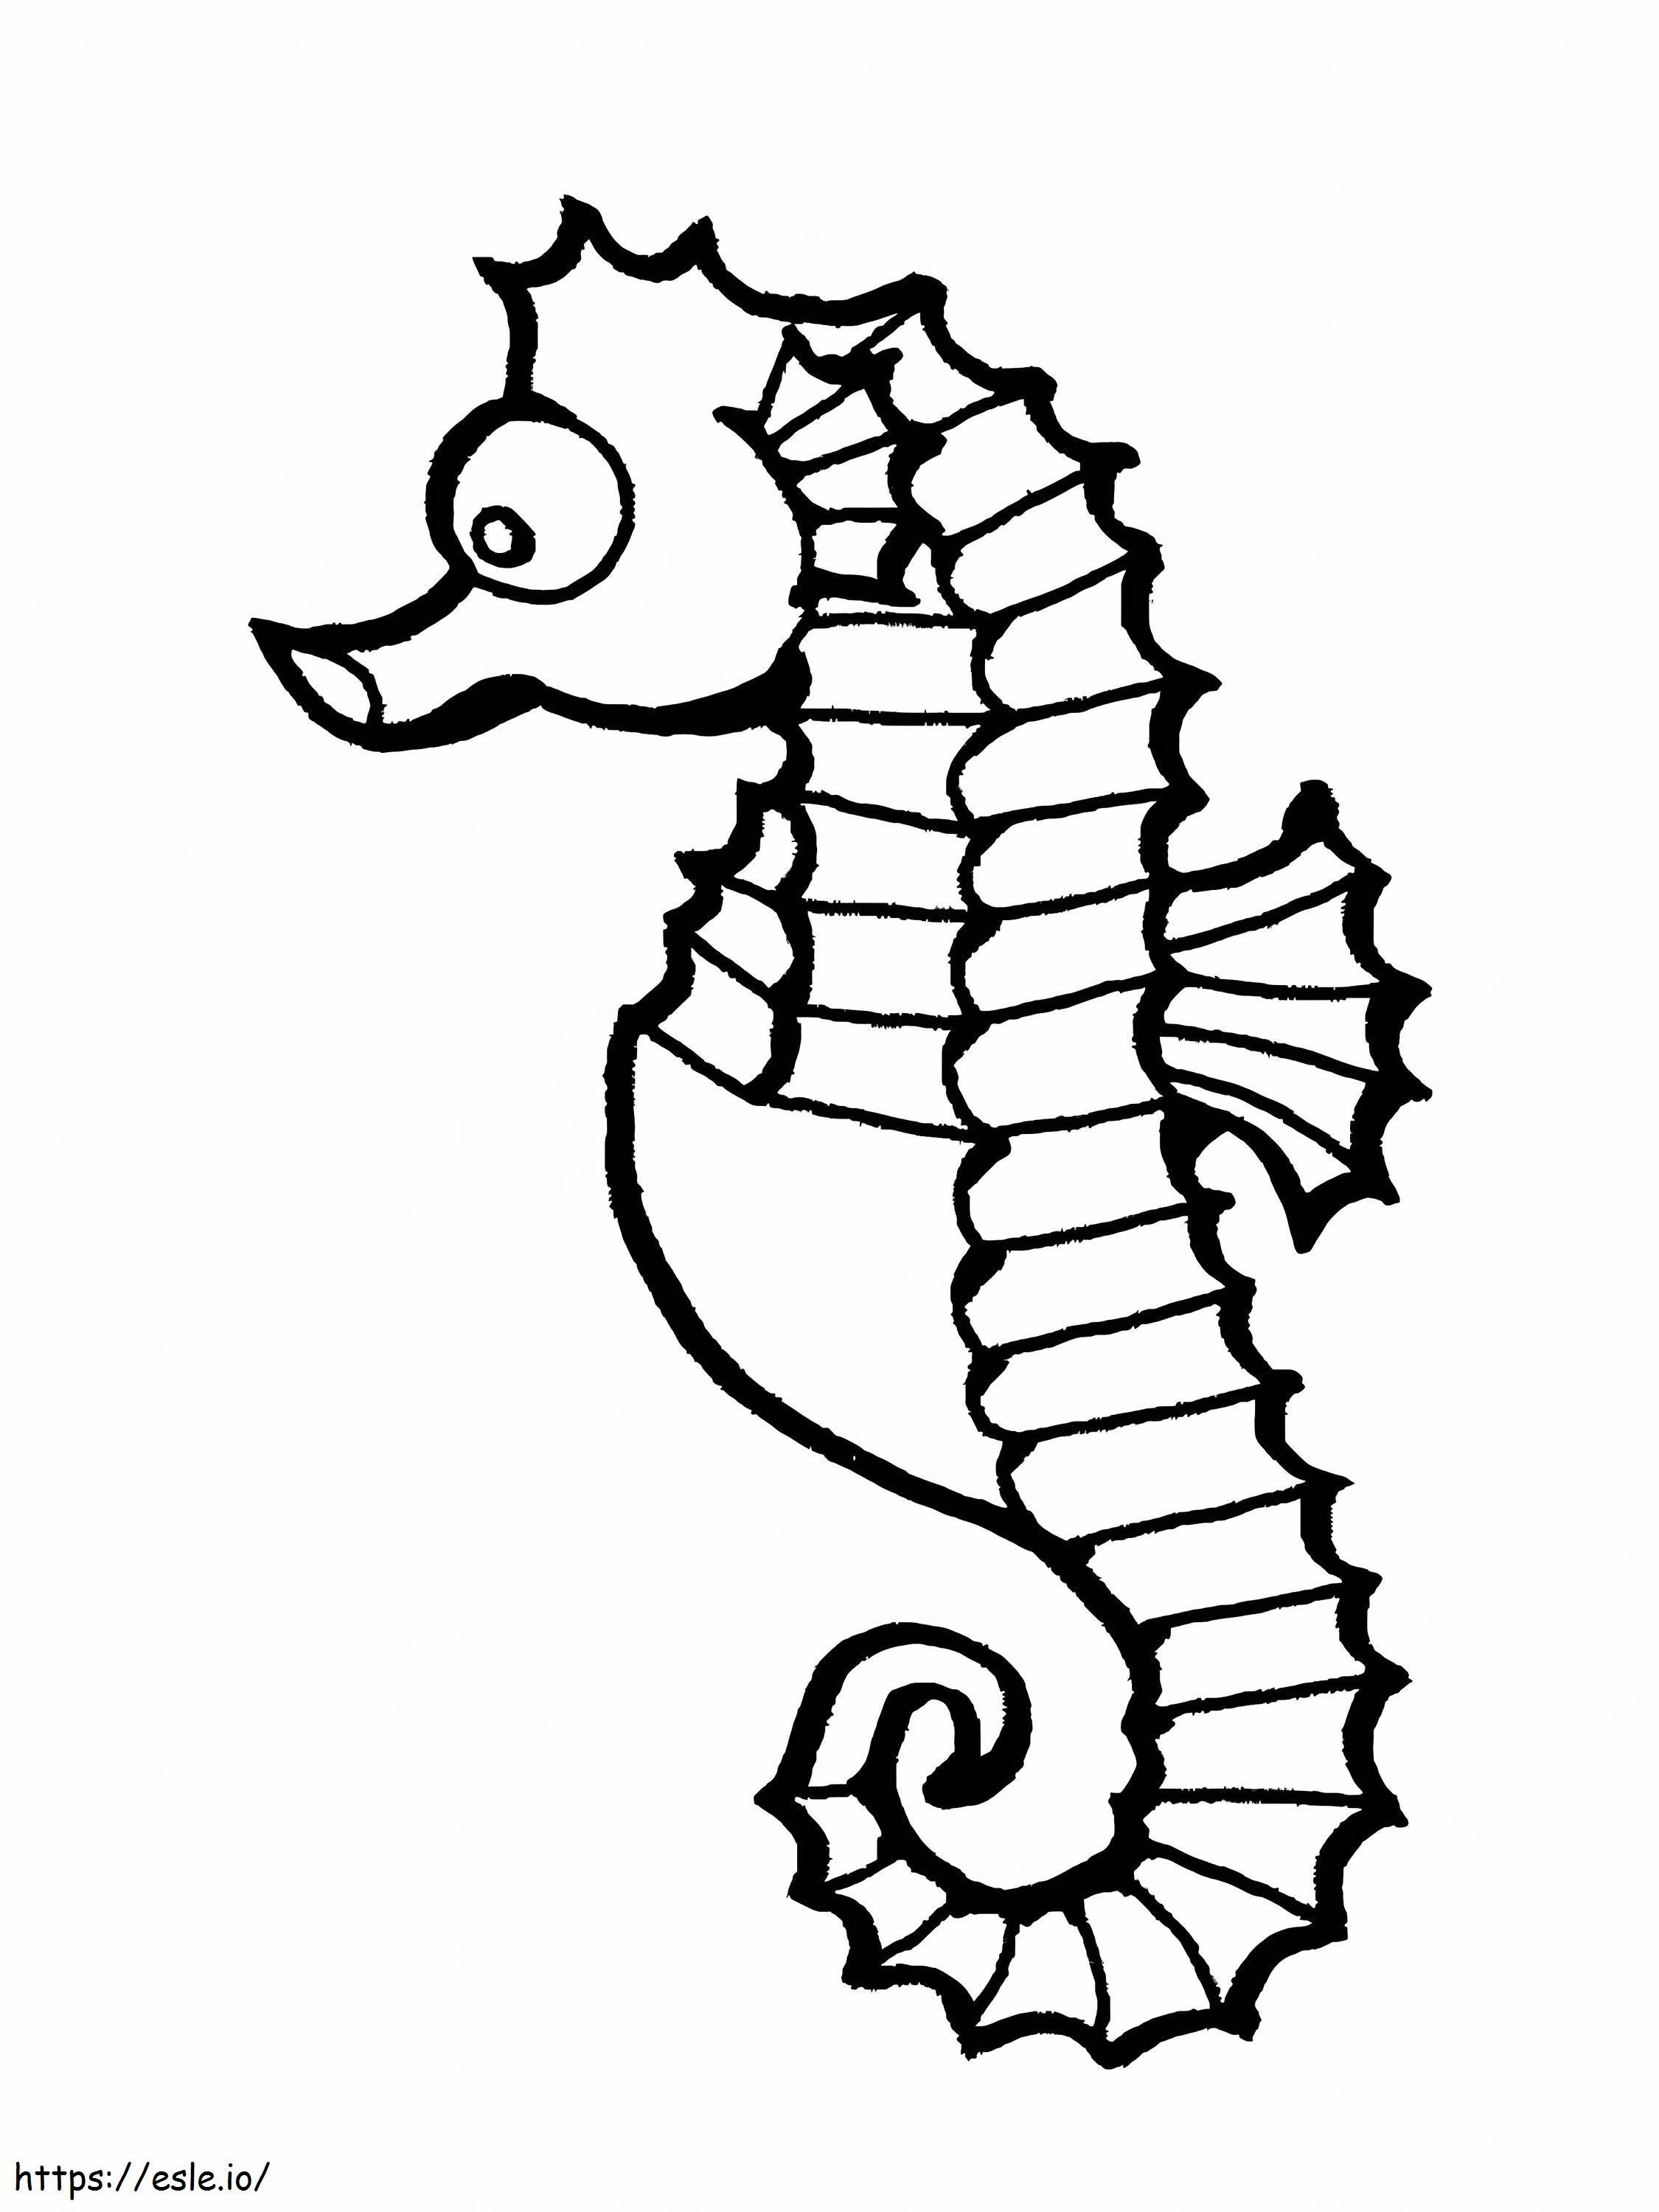 Cartoon Seahorse coloring page